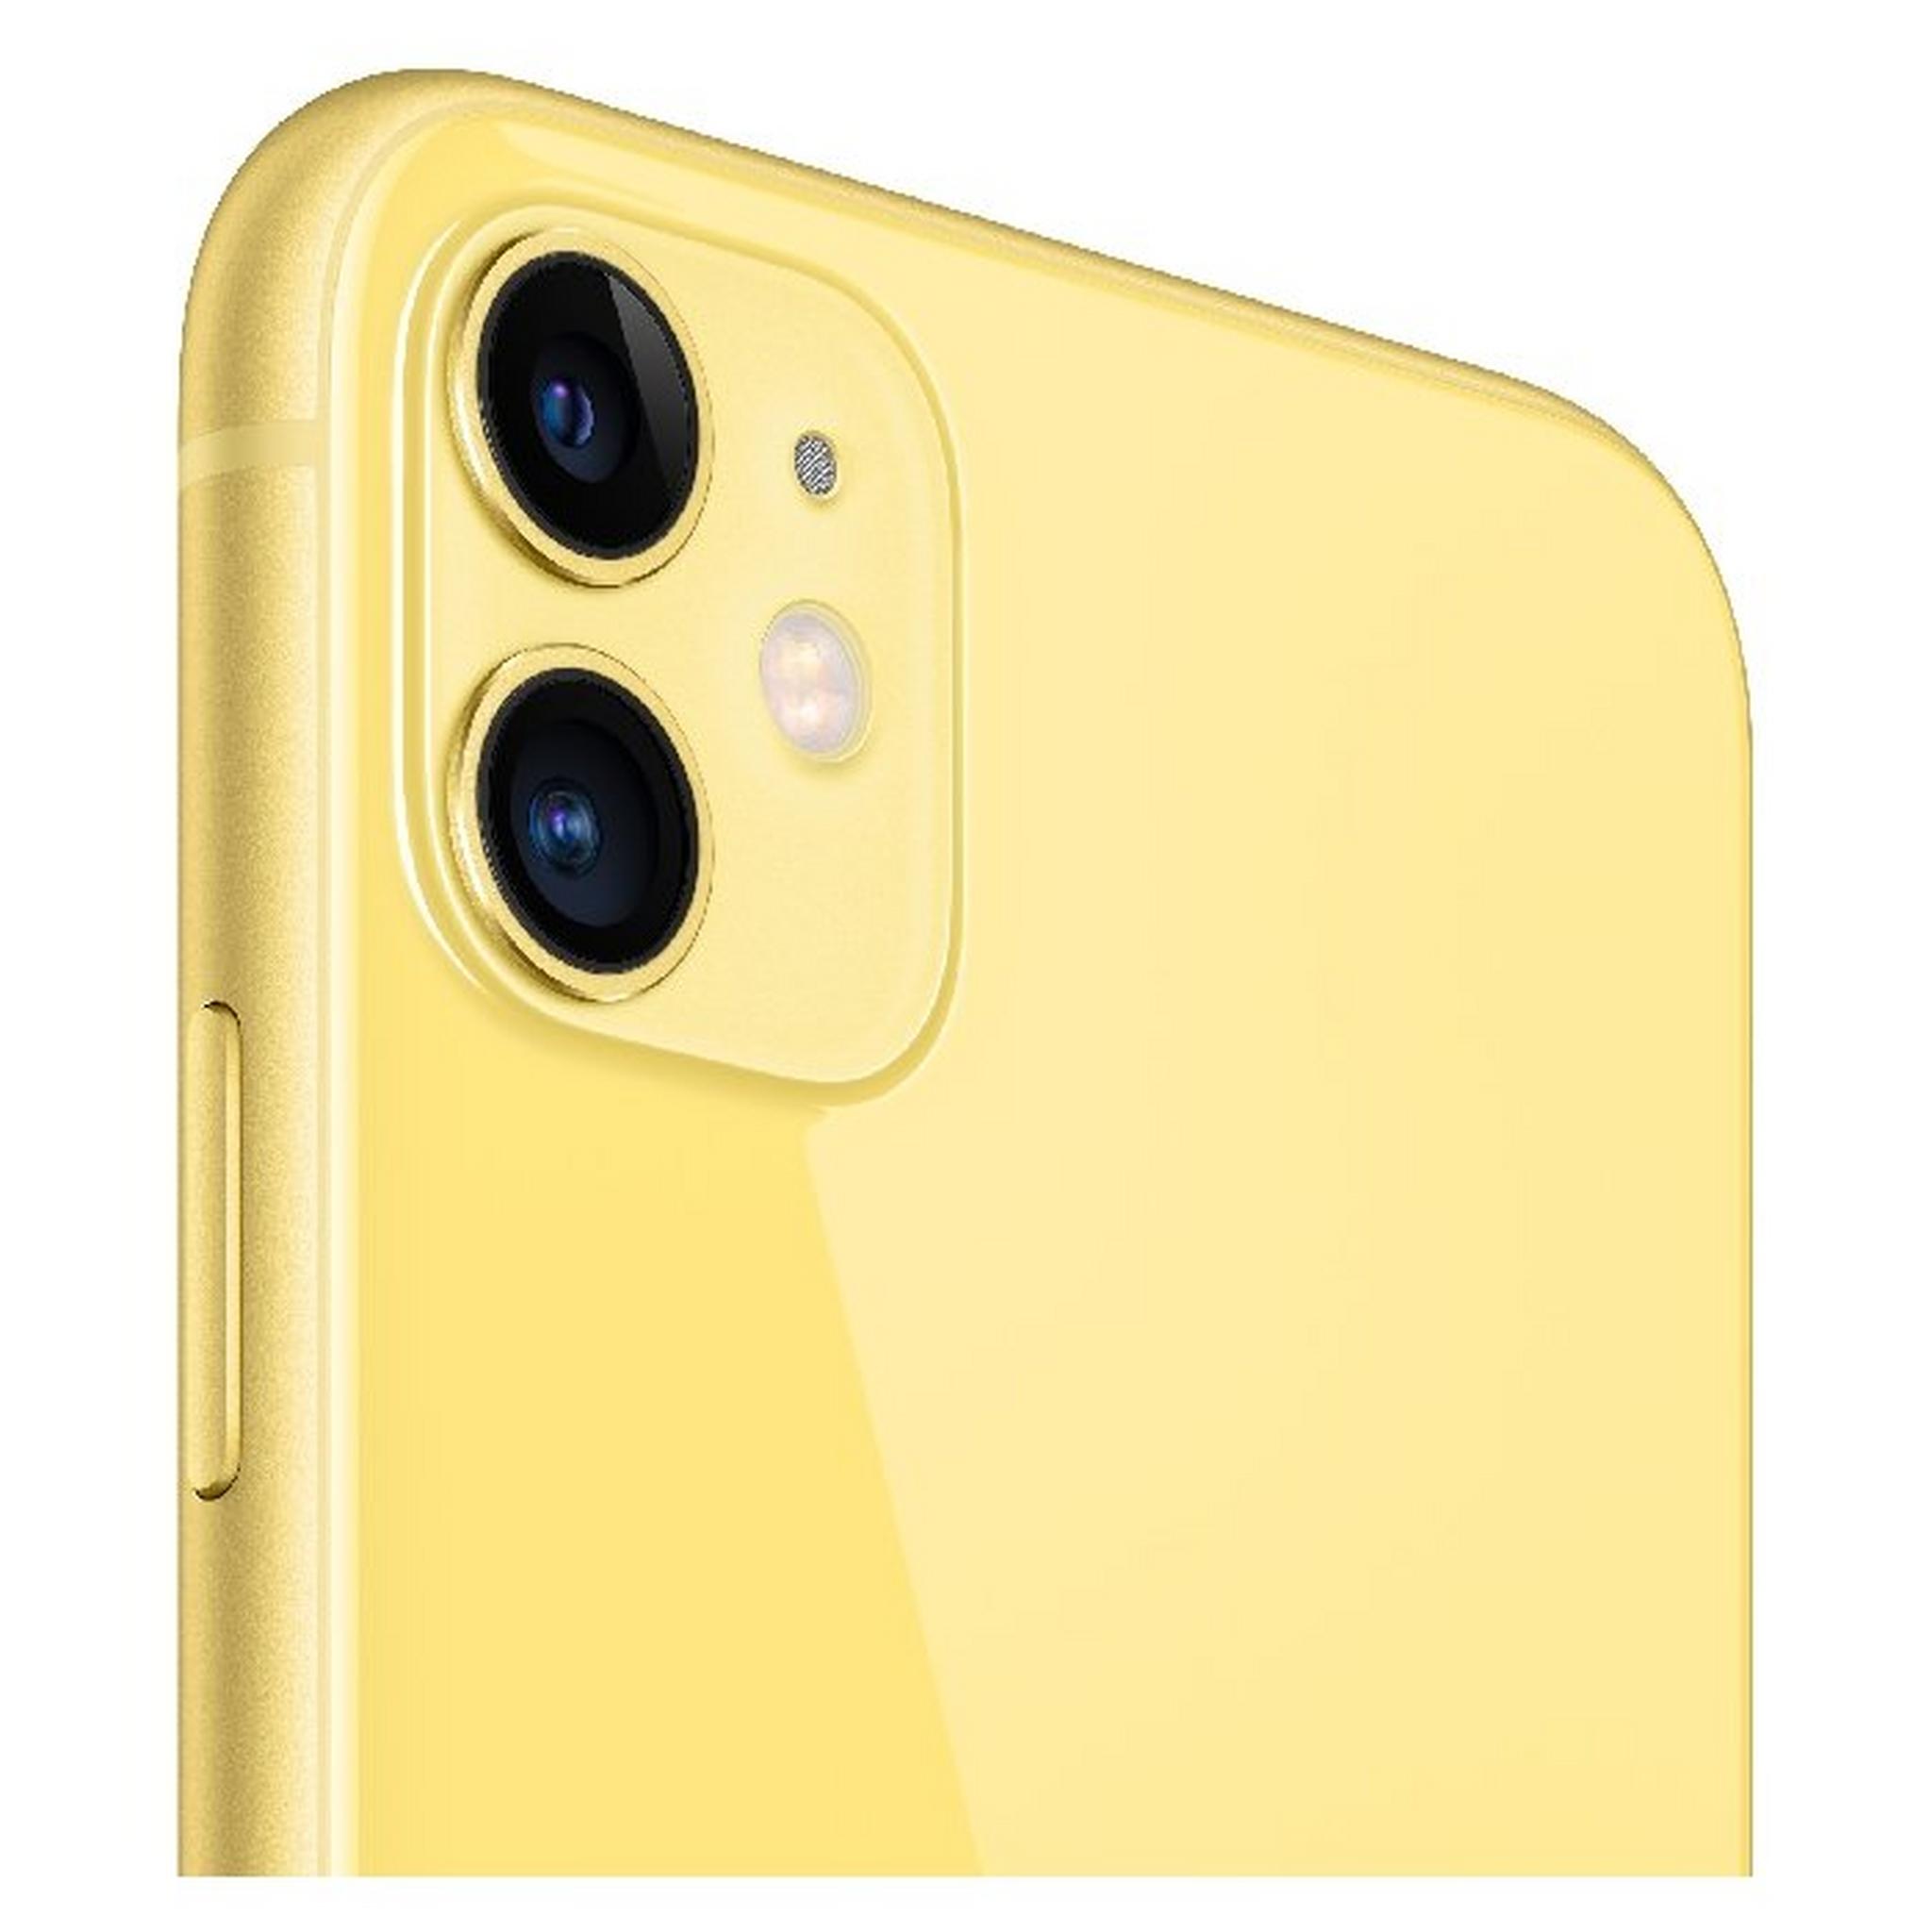 هاتف أبل أيفون ١١ (١٢٨ جيجابايت) - أصفر